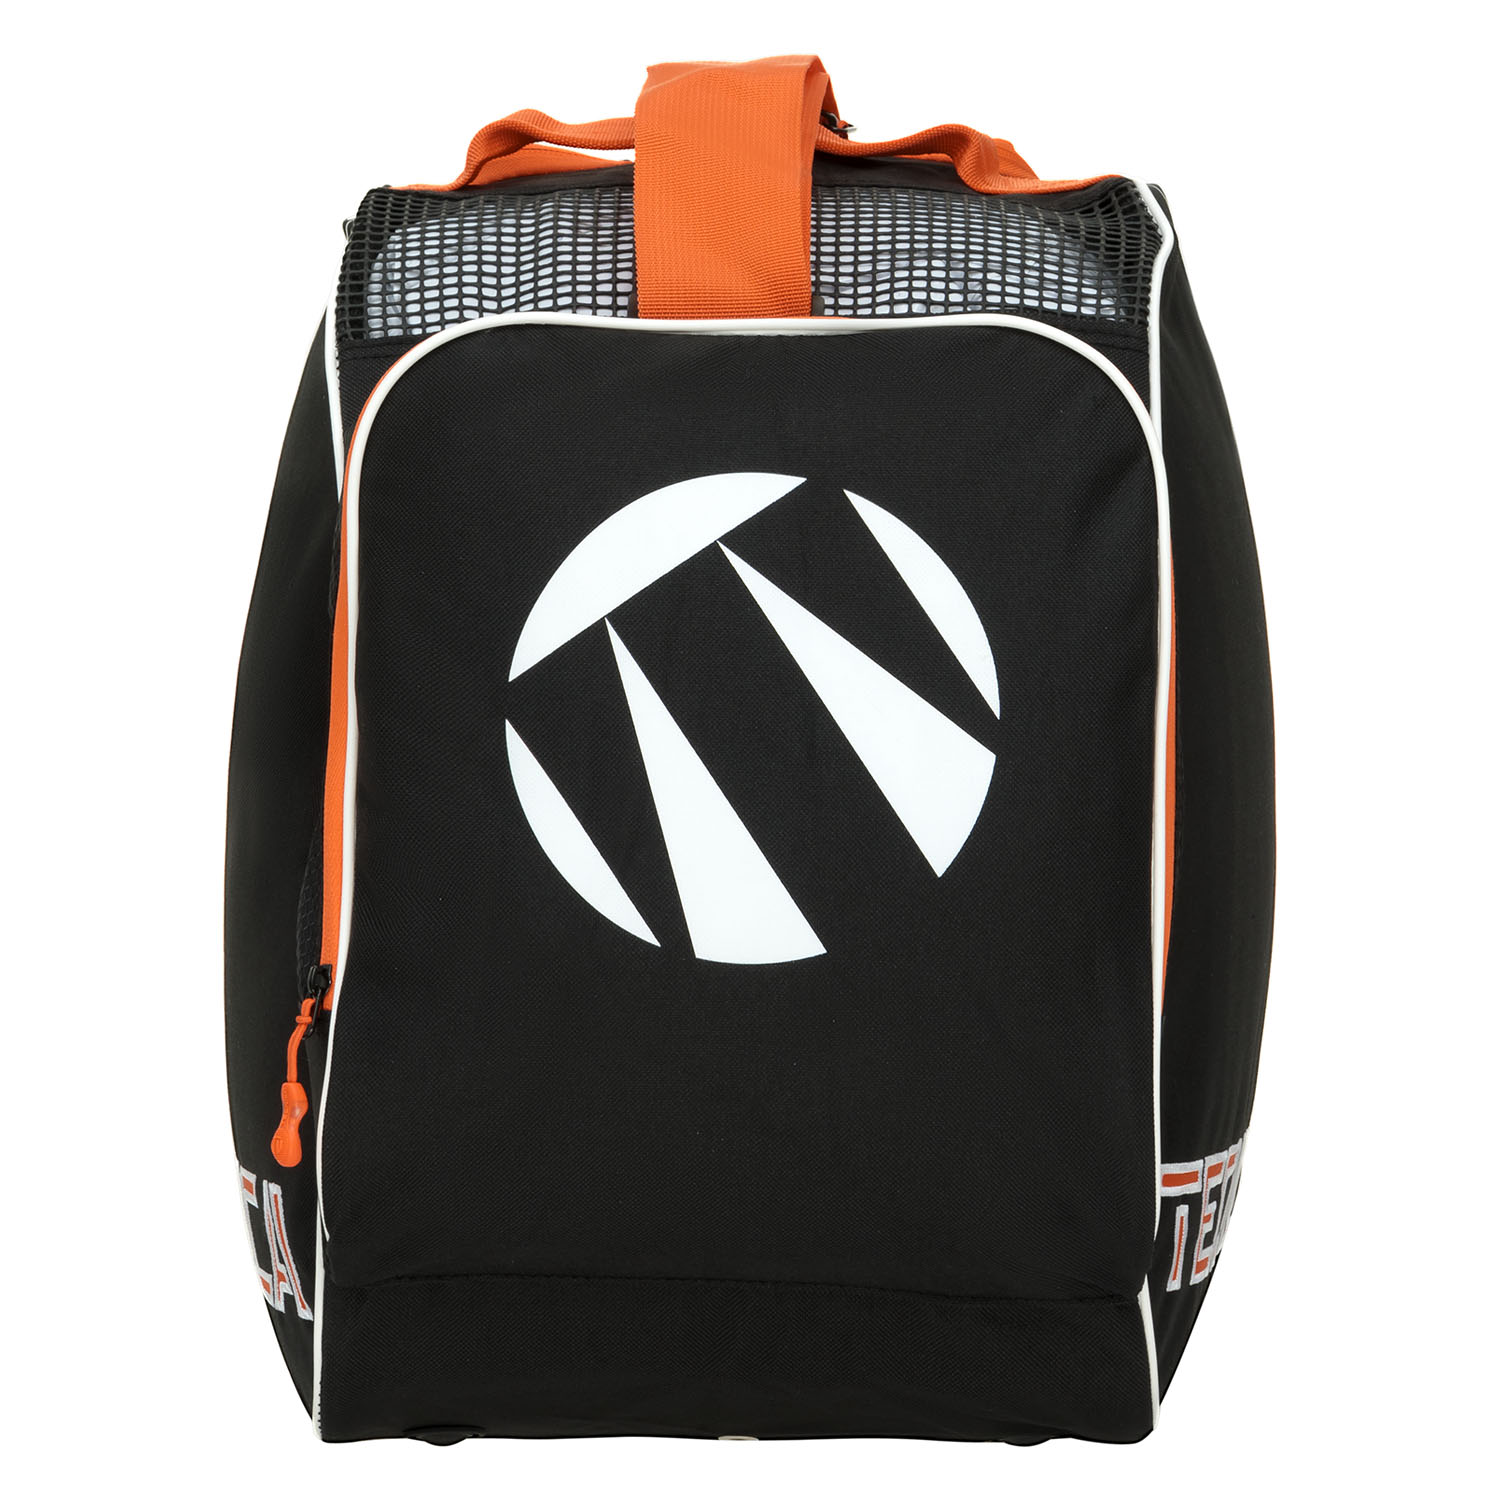 Сумка для горнолыжных ботинок Tecnica Skiboot bag Premium Black/Orange